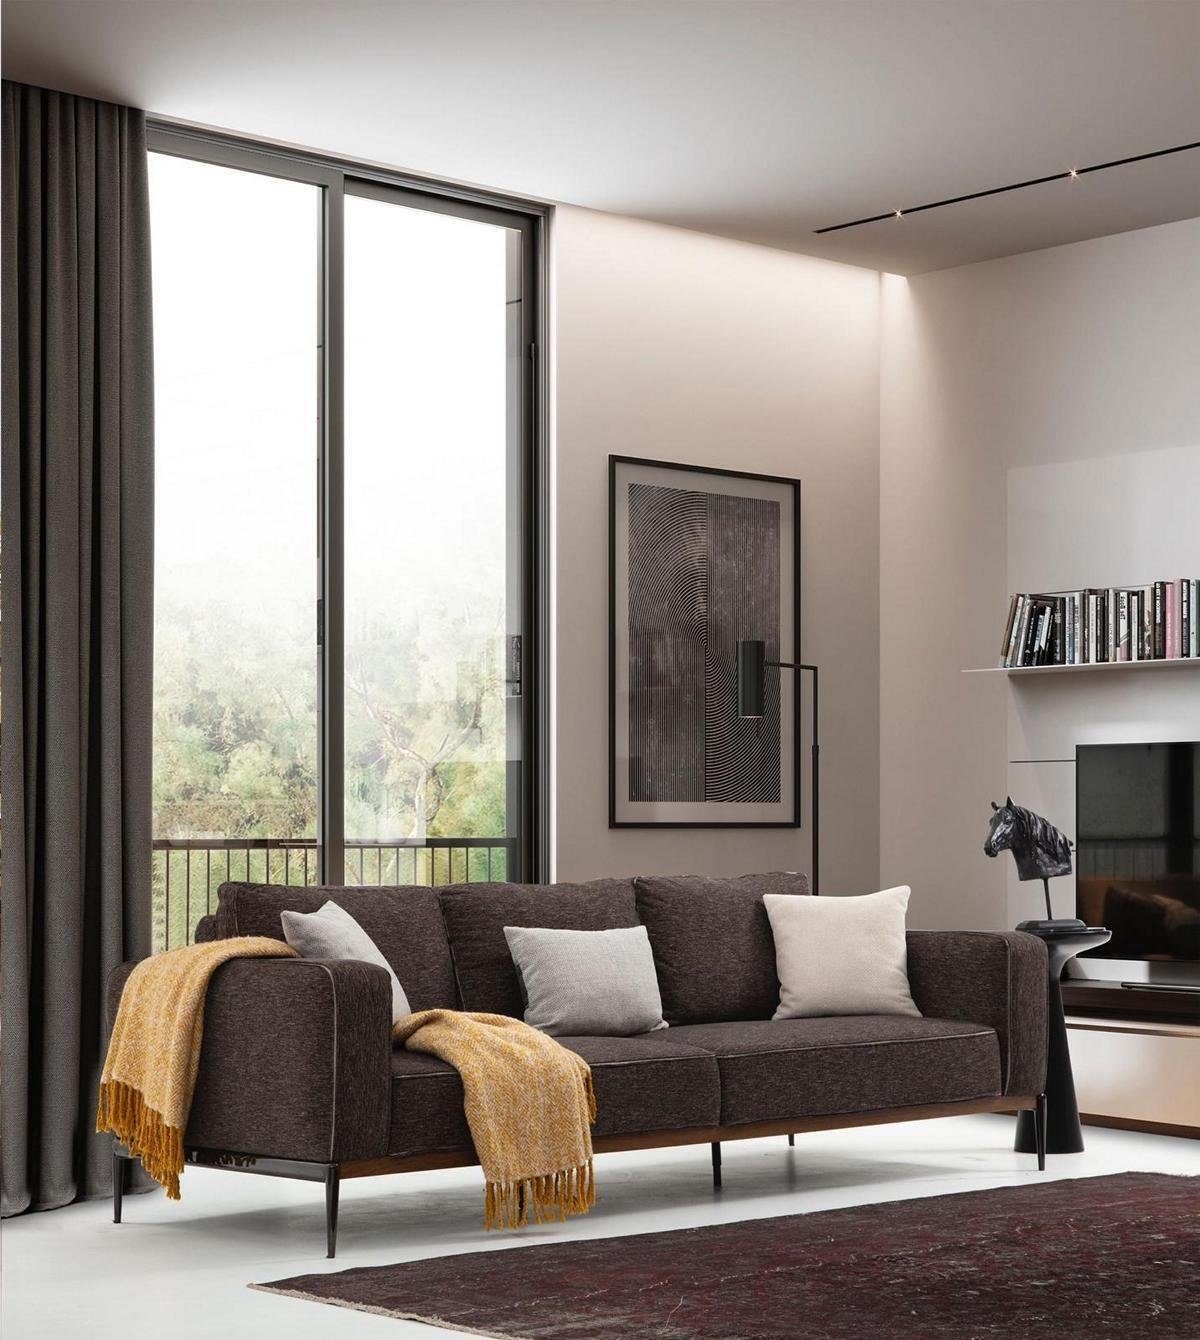 JVmoebel 4-Sitzer Viersitzer Sofa 1 Design Teile, Stoff Europa Sitzer Sofas Wohnzimmer Made Modern Grau, in 4